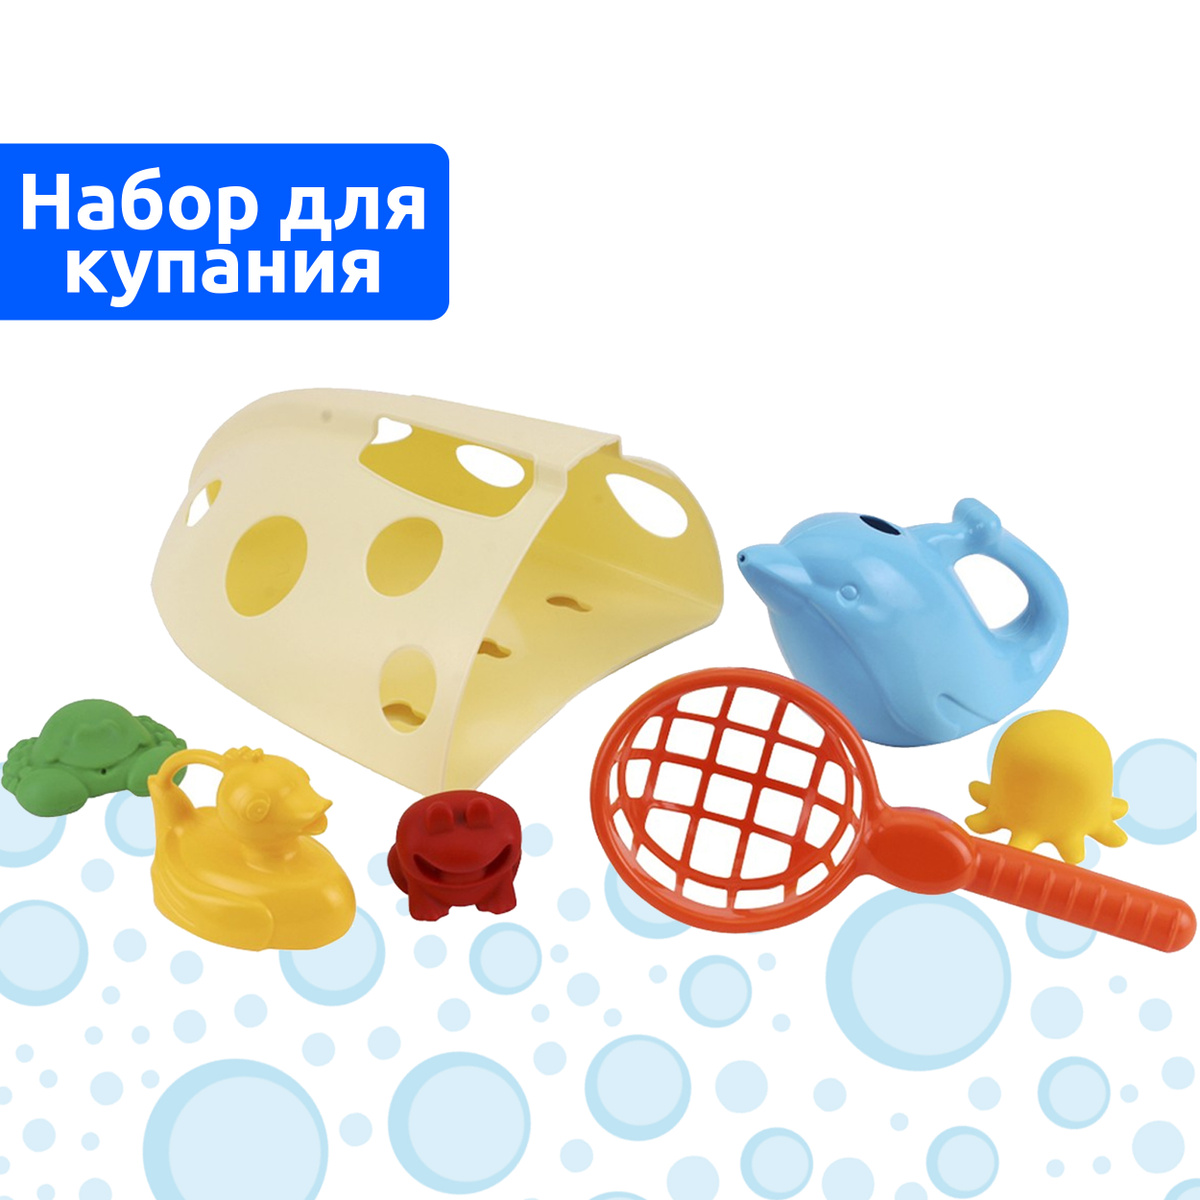 Органайзер детский ковш для ванной ТЕХНОК игрушки для купания в ванной / игрушки для купания малышей #1